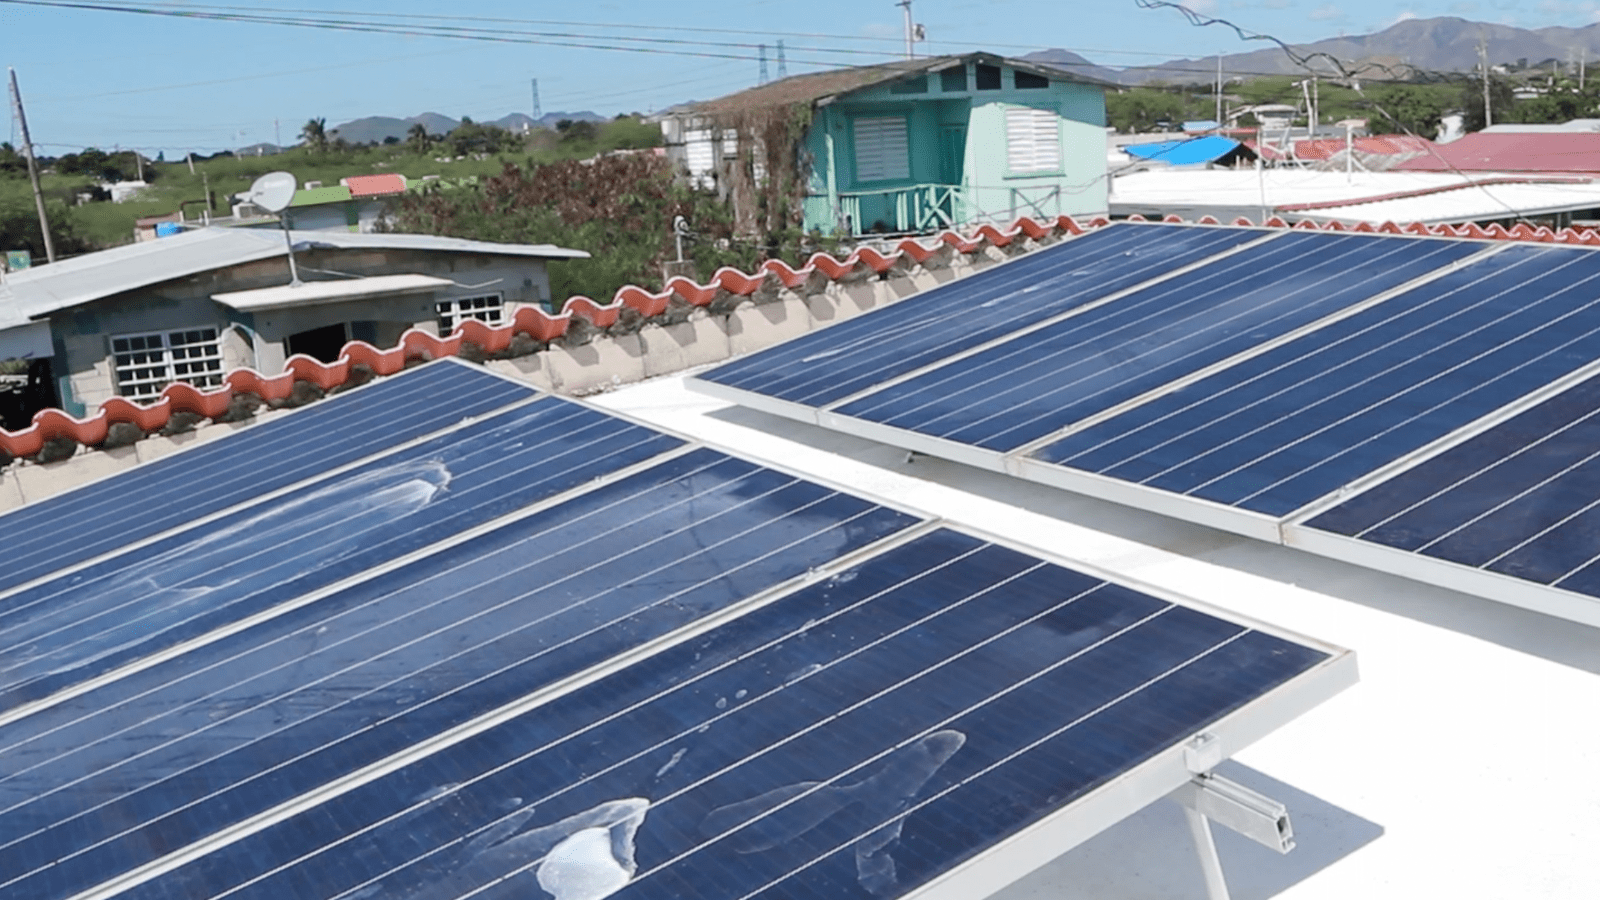 Alors que les centrales à combustibles fossiles risquent de prendre leur retraite, une communauté de Porto Rico fait pression pour l’énergie solaire sur les toits